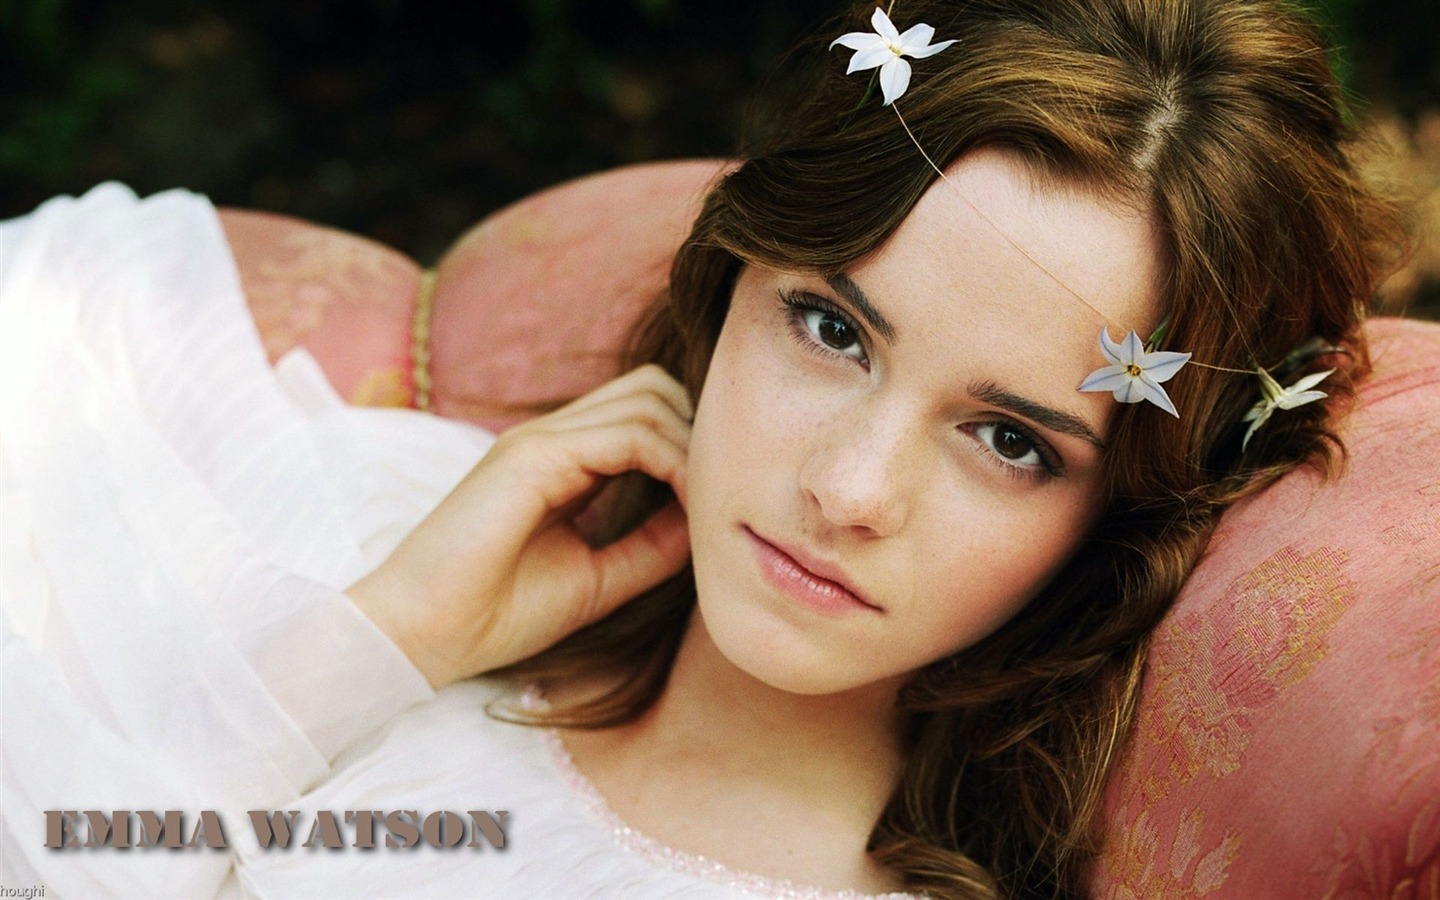 Emma Watson 艾玛·沃特森 美女壁纸27 - 1440x900